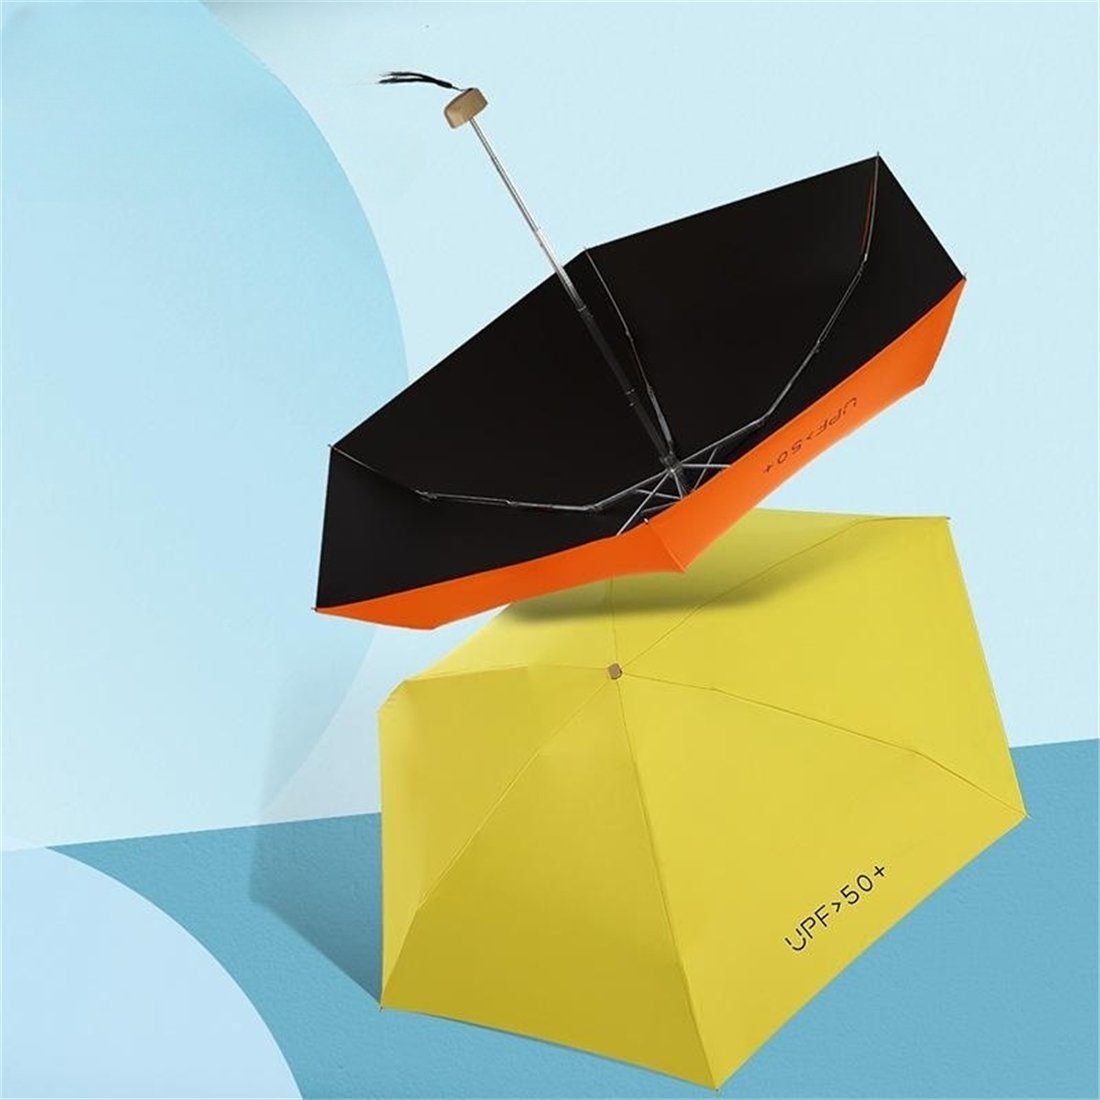 Sonnenschutz Himmelblau Regenschirm Light Auf-Zu, winzig schützt UV-Schutz Sonne für klein Ultra und Mini vor YOOdy~ damen Taschenschirme Taschenregenschirm Regen unterwegs für